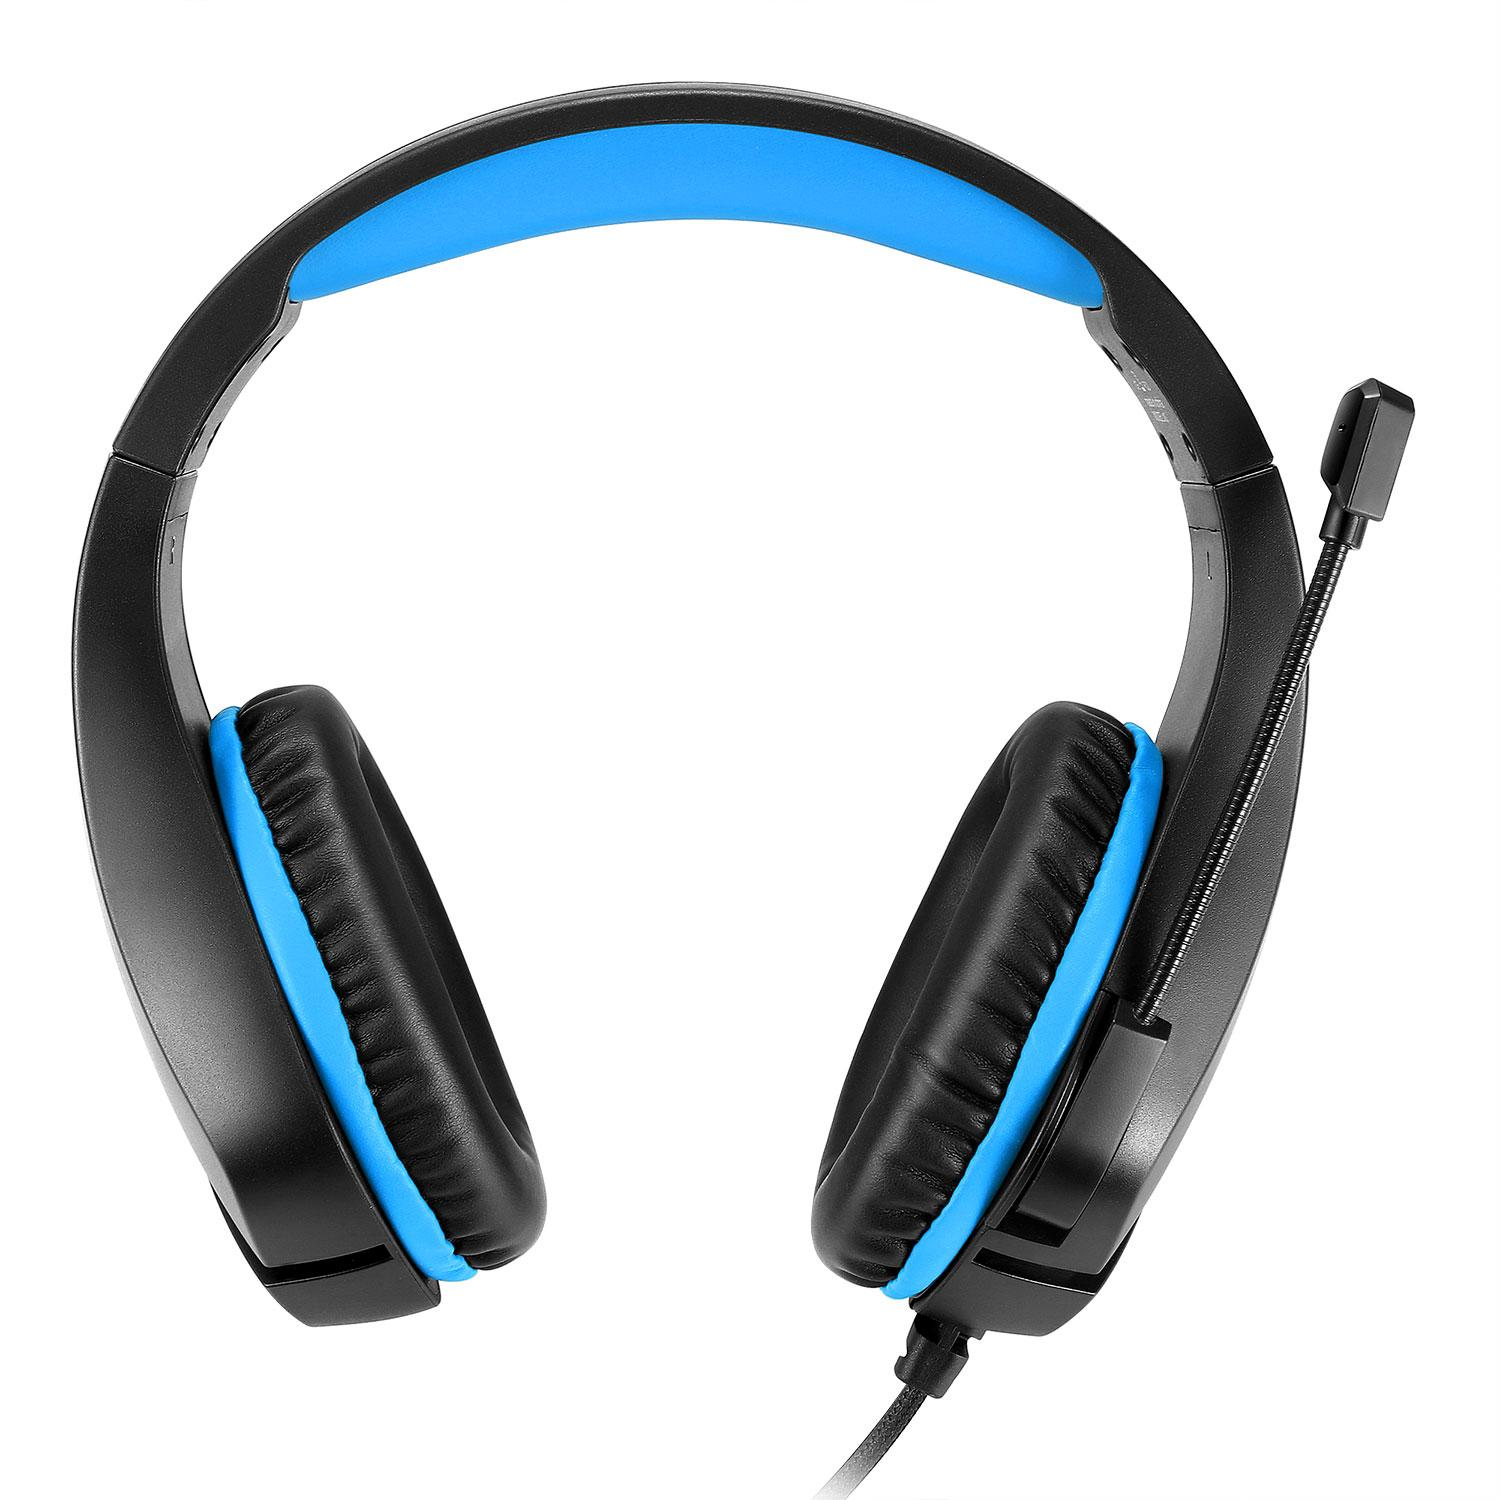 INF Gaming-Headset mit 3,5 mm Over-ear Gaming Schwarz/Blau, - Schwarz/Blau Klinkenstecker Headset